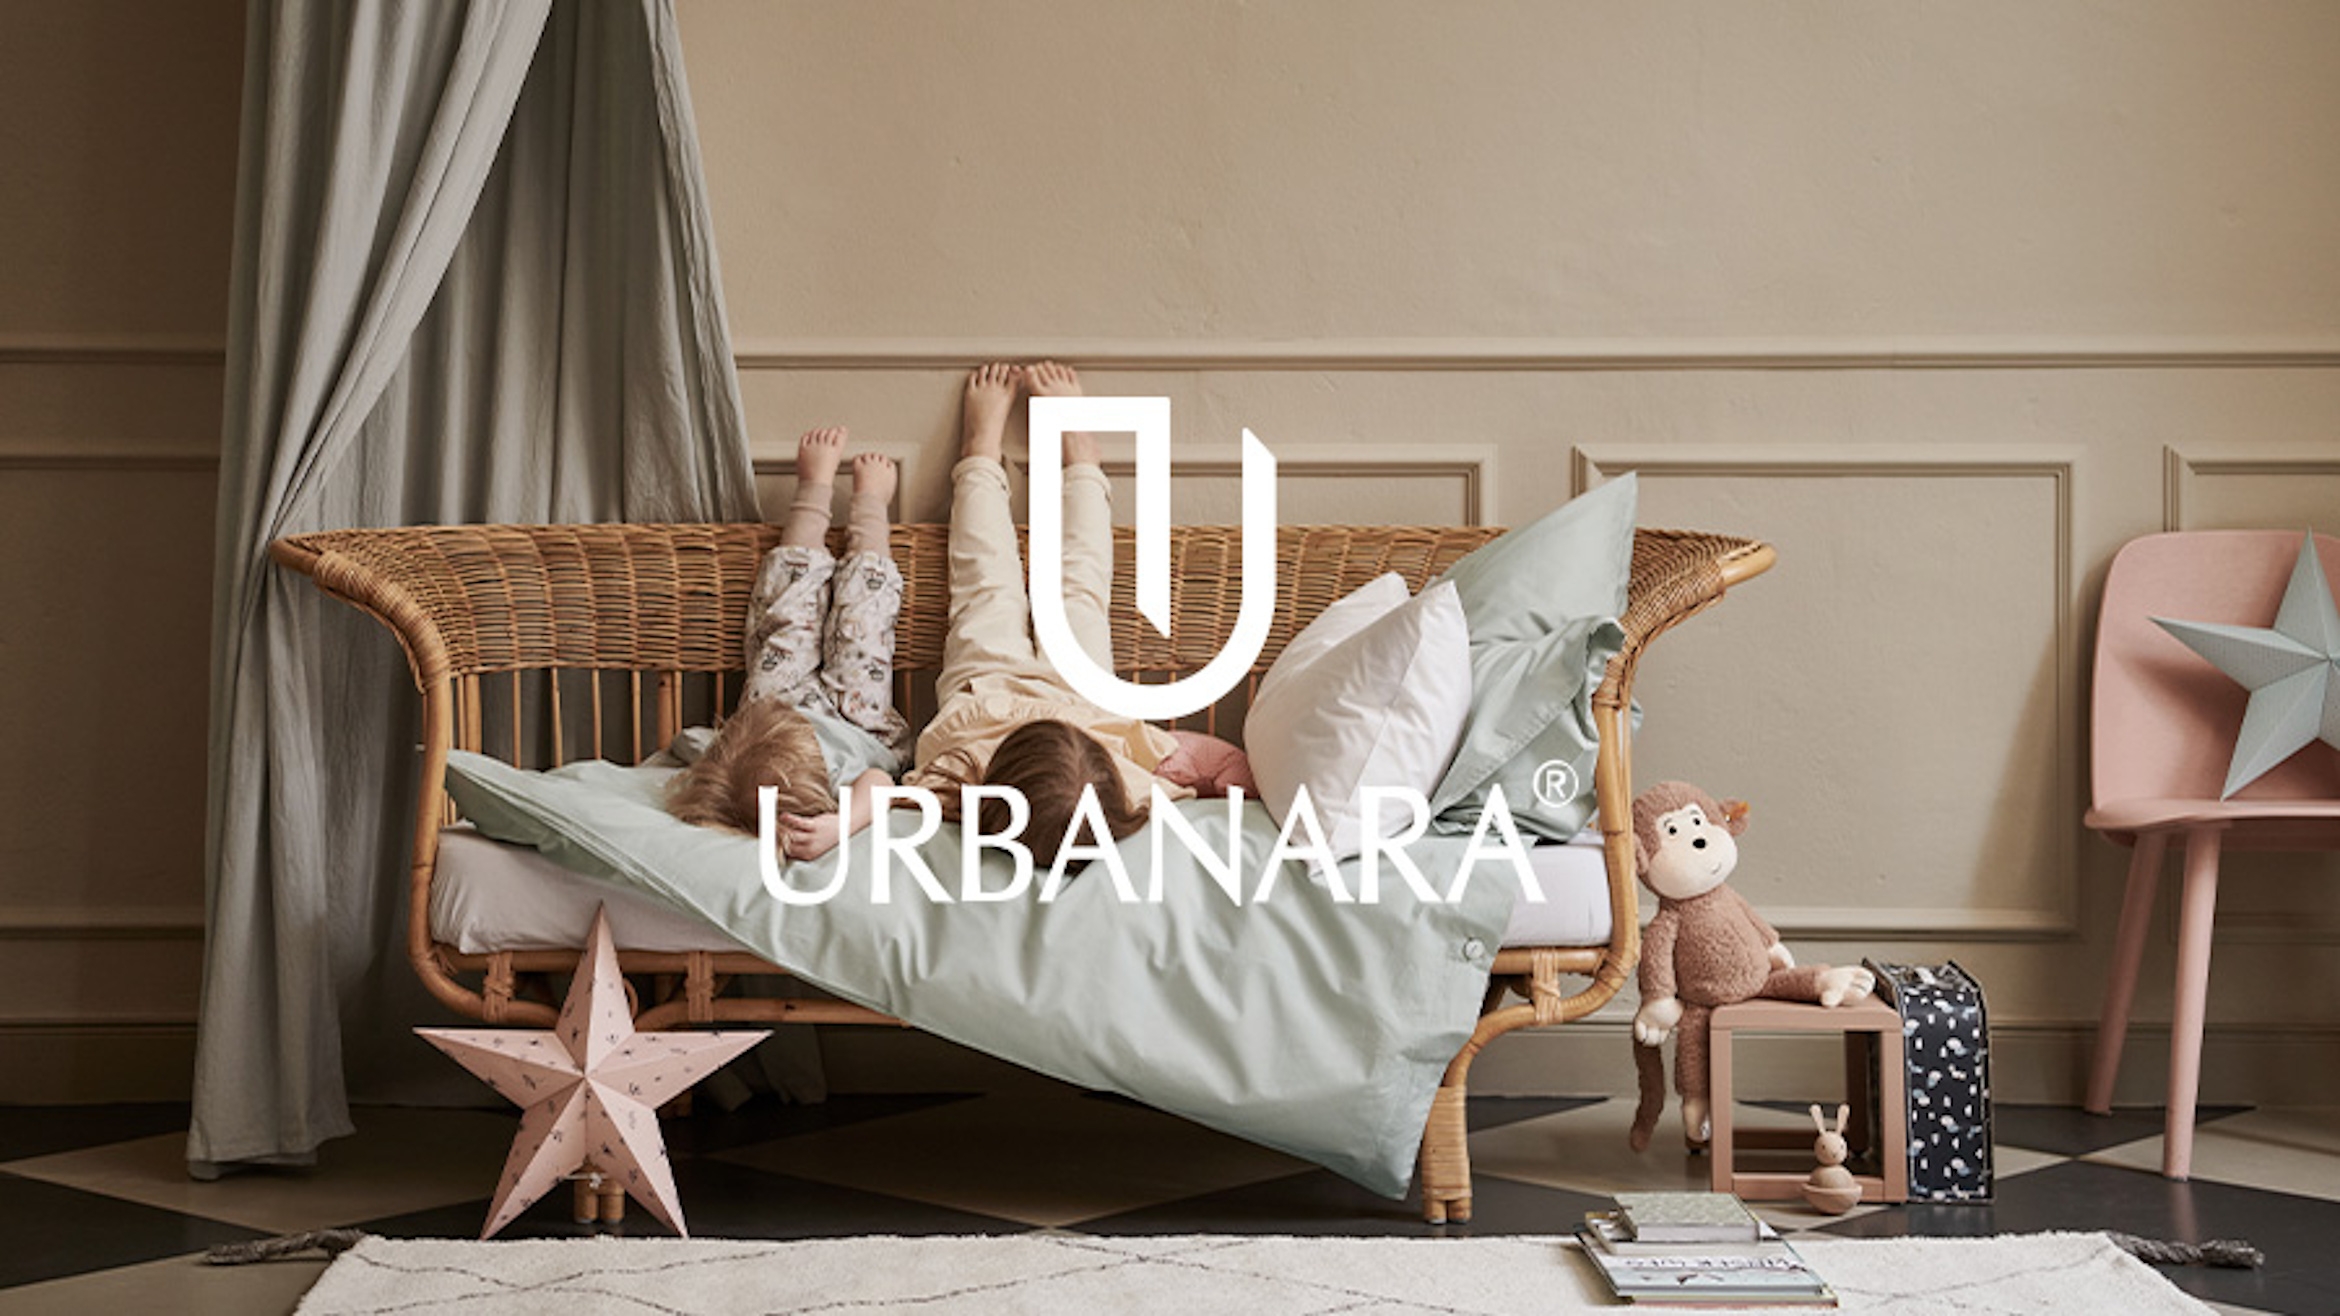 Urbanara wurde 2019 von Social Chain übernommen